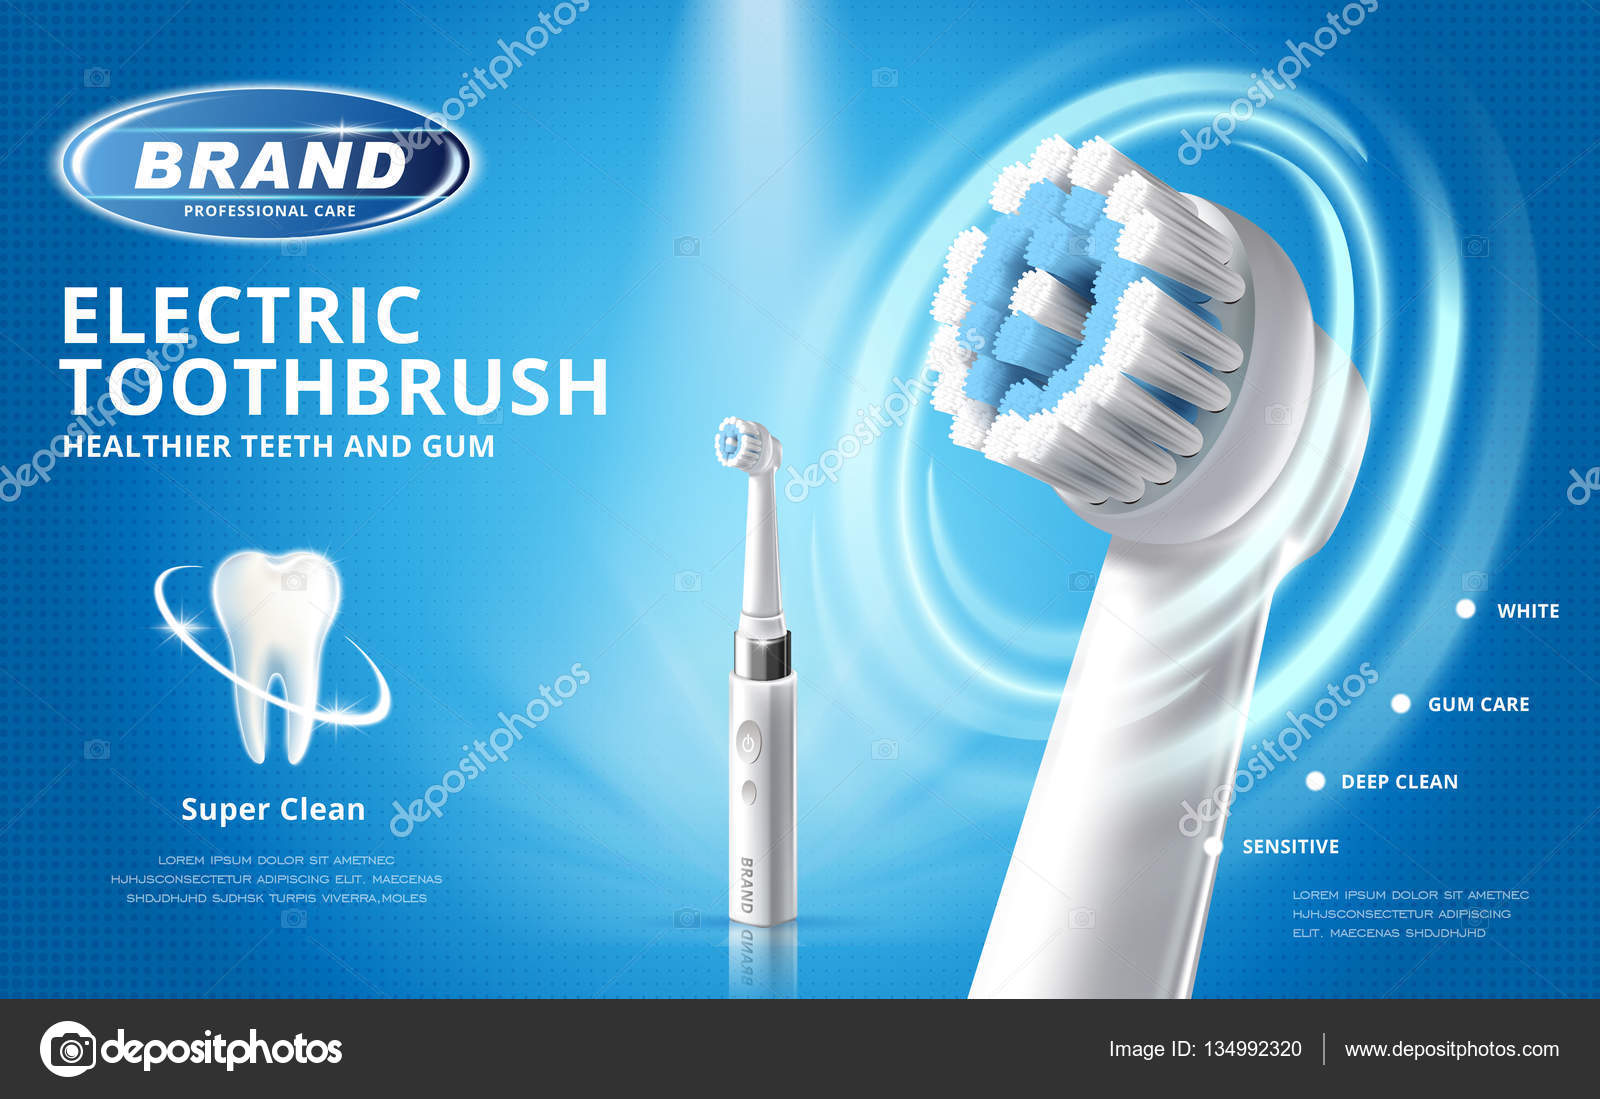 Реклама электрической зубной щетки текст электрические зубные щетки звуковые и механические